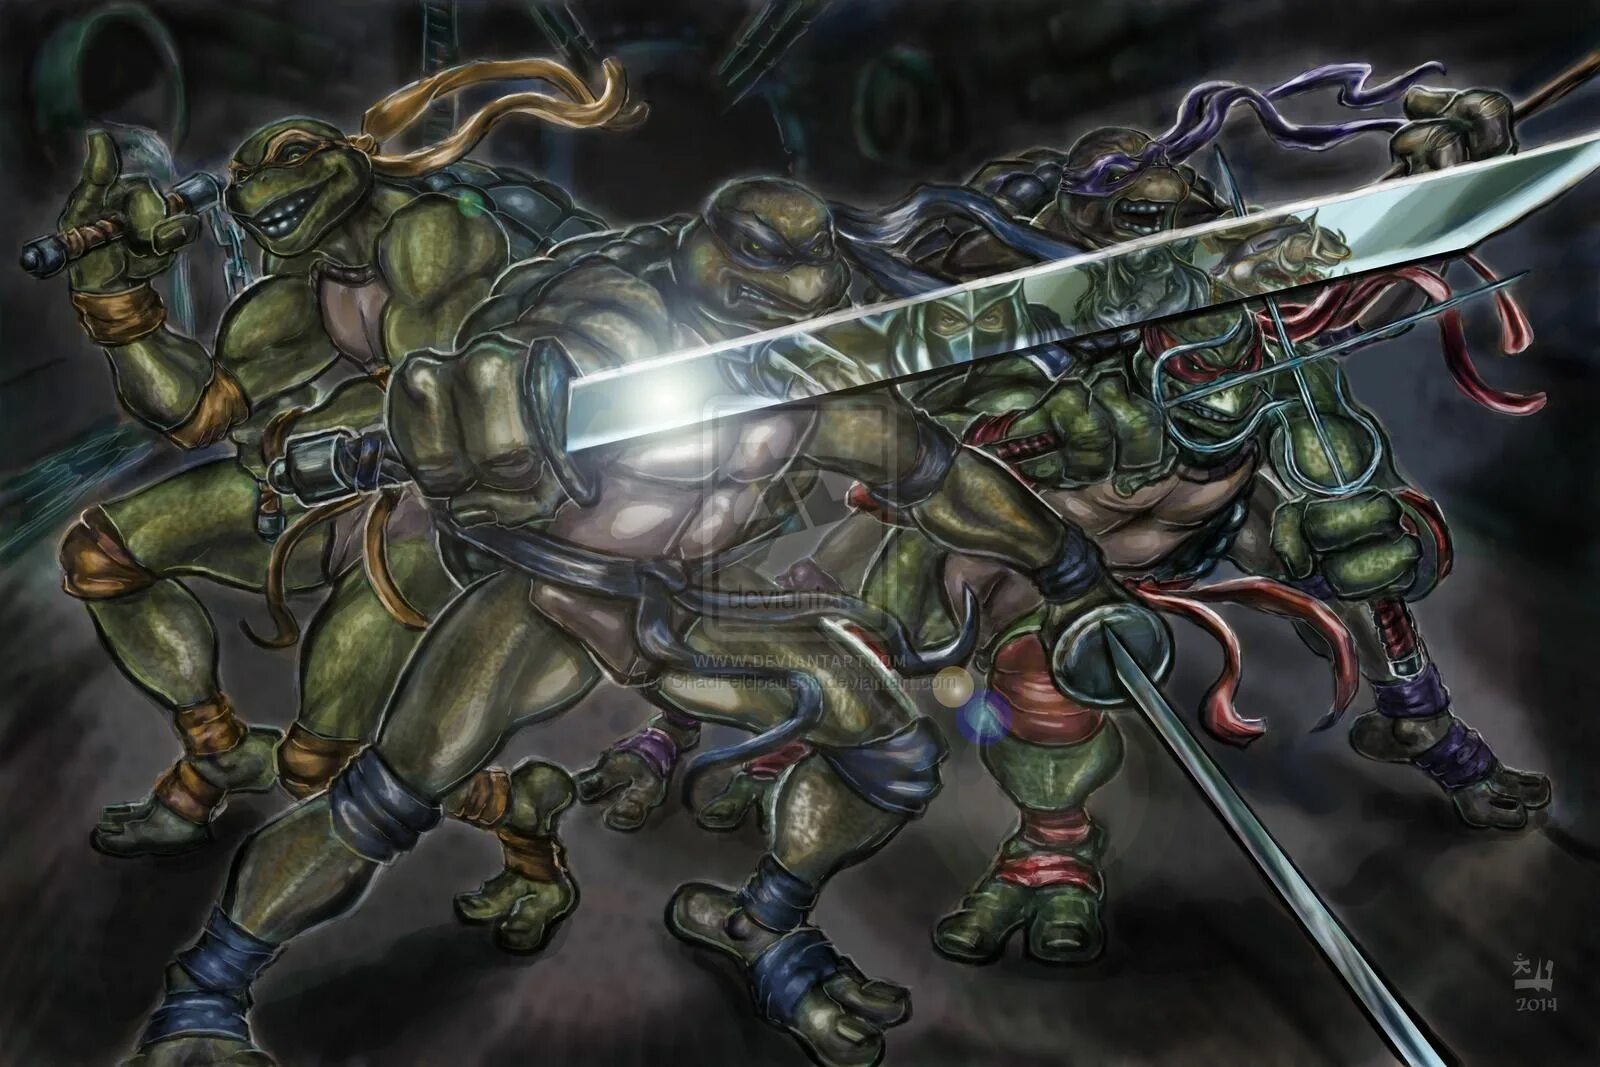 Tmnt vs. Черепашки ниндзя Shredder Revenge. Шредер TMNT. Крейн Черепашки ниндзя. Ninja Turtles Shredder Revenge.